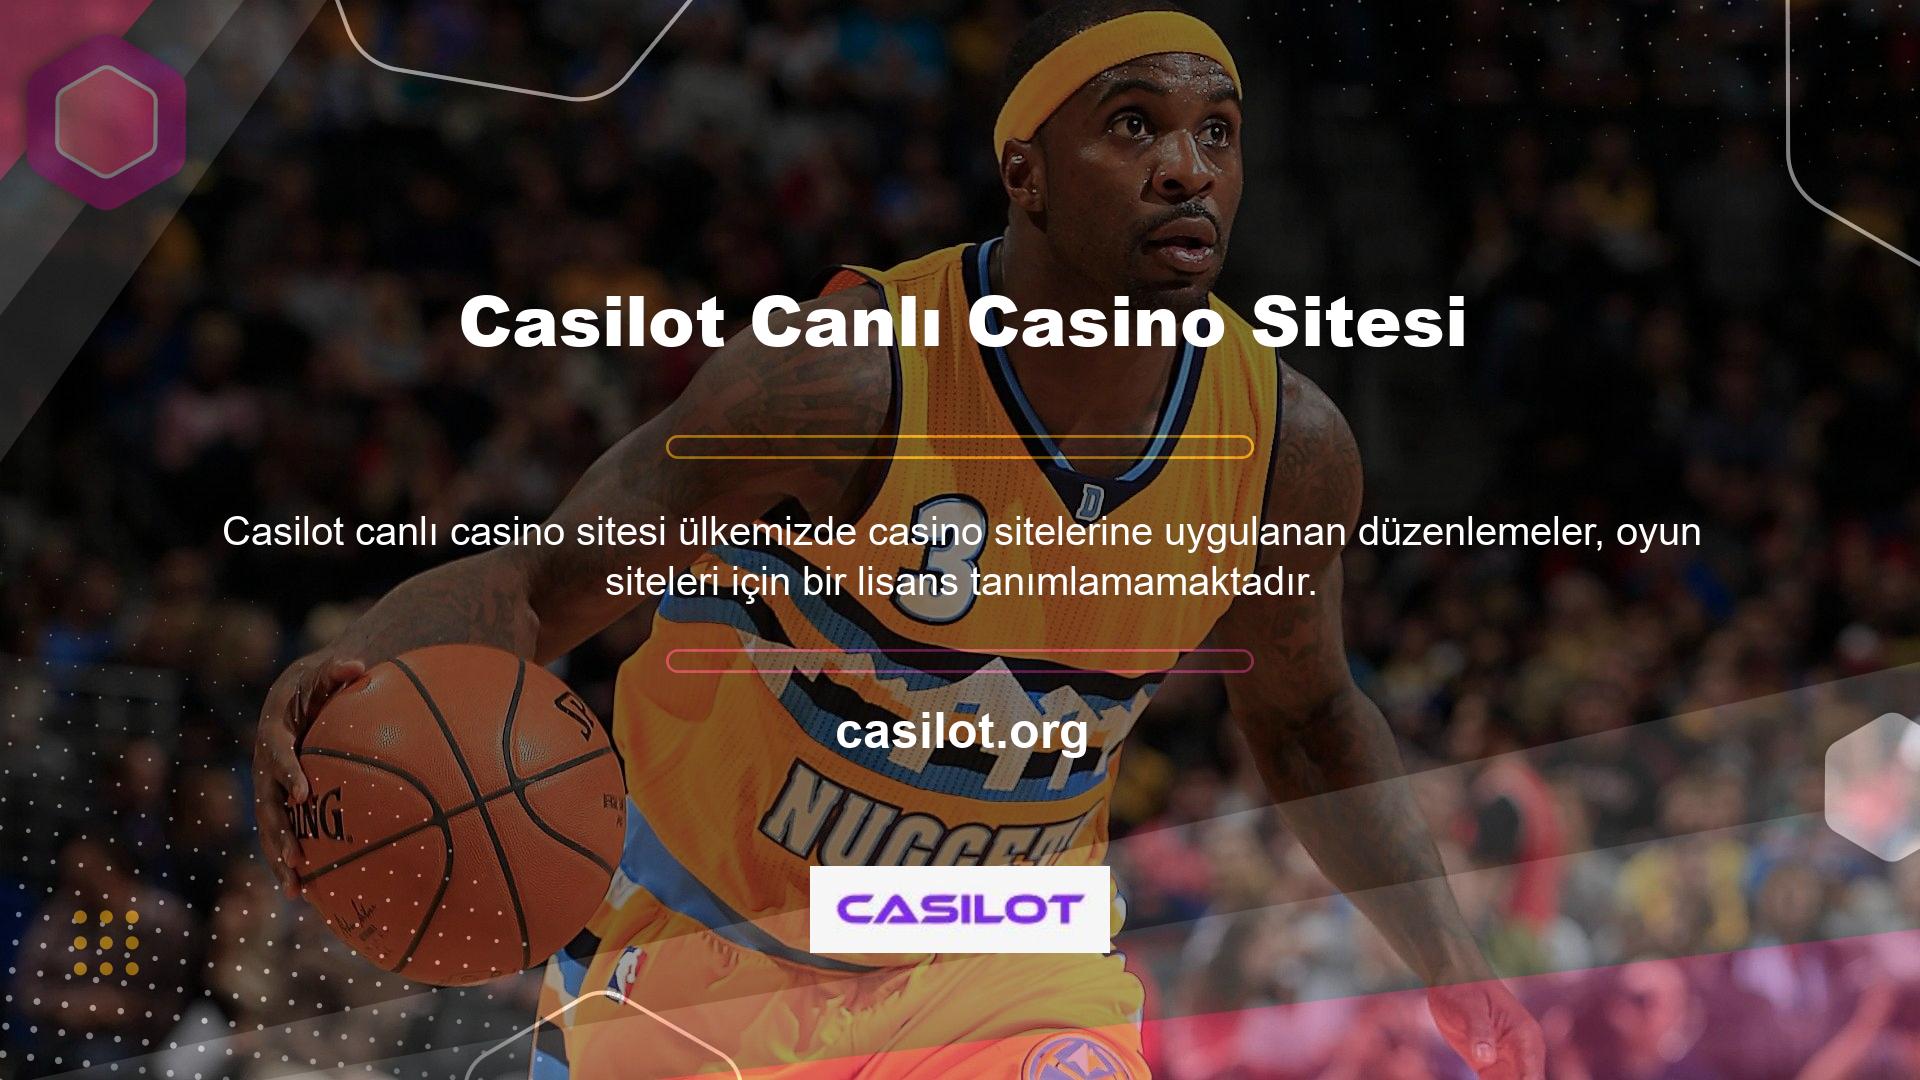 Bu nedenle, web sitesi için geçerli bir sertifika alamayan casino siteleri, TİB tarafından haftalık olarak belirli kısıtlamalara tabi tutulabilir